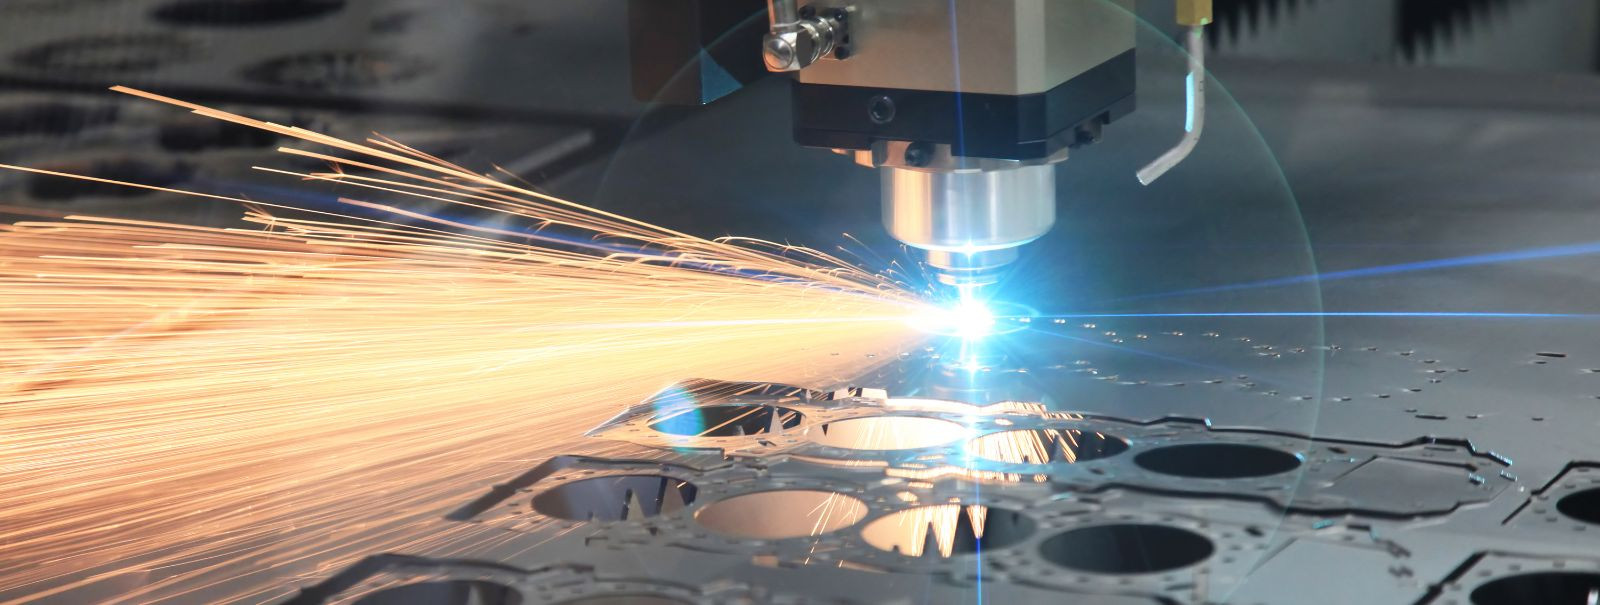 Laserlõikus on tipptasemel tehnoloogia, mis on revolutsiooniliselt muutnud metallitööstust. Kõrgelt fokusseeritud laserkiire jõu rakendamisega on võimalik metal